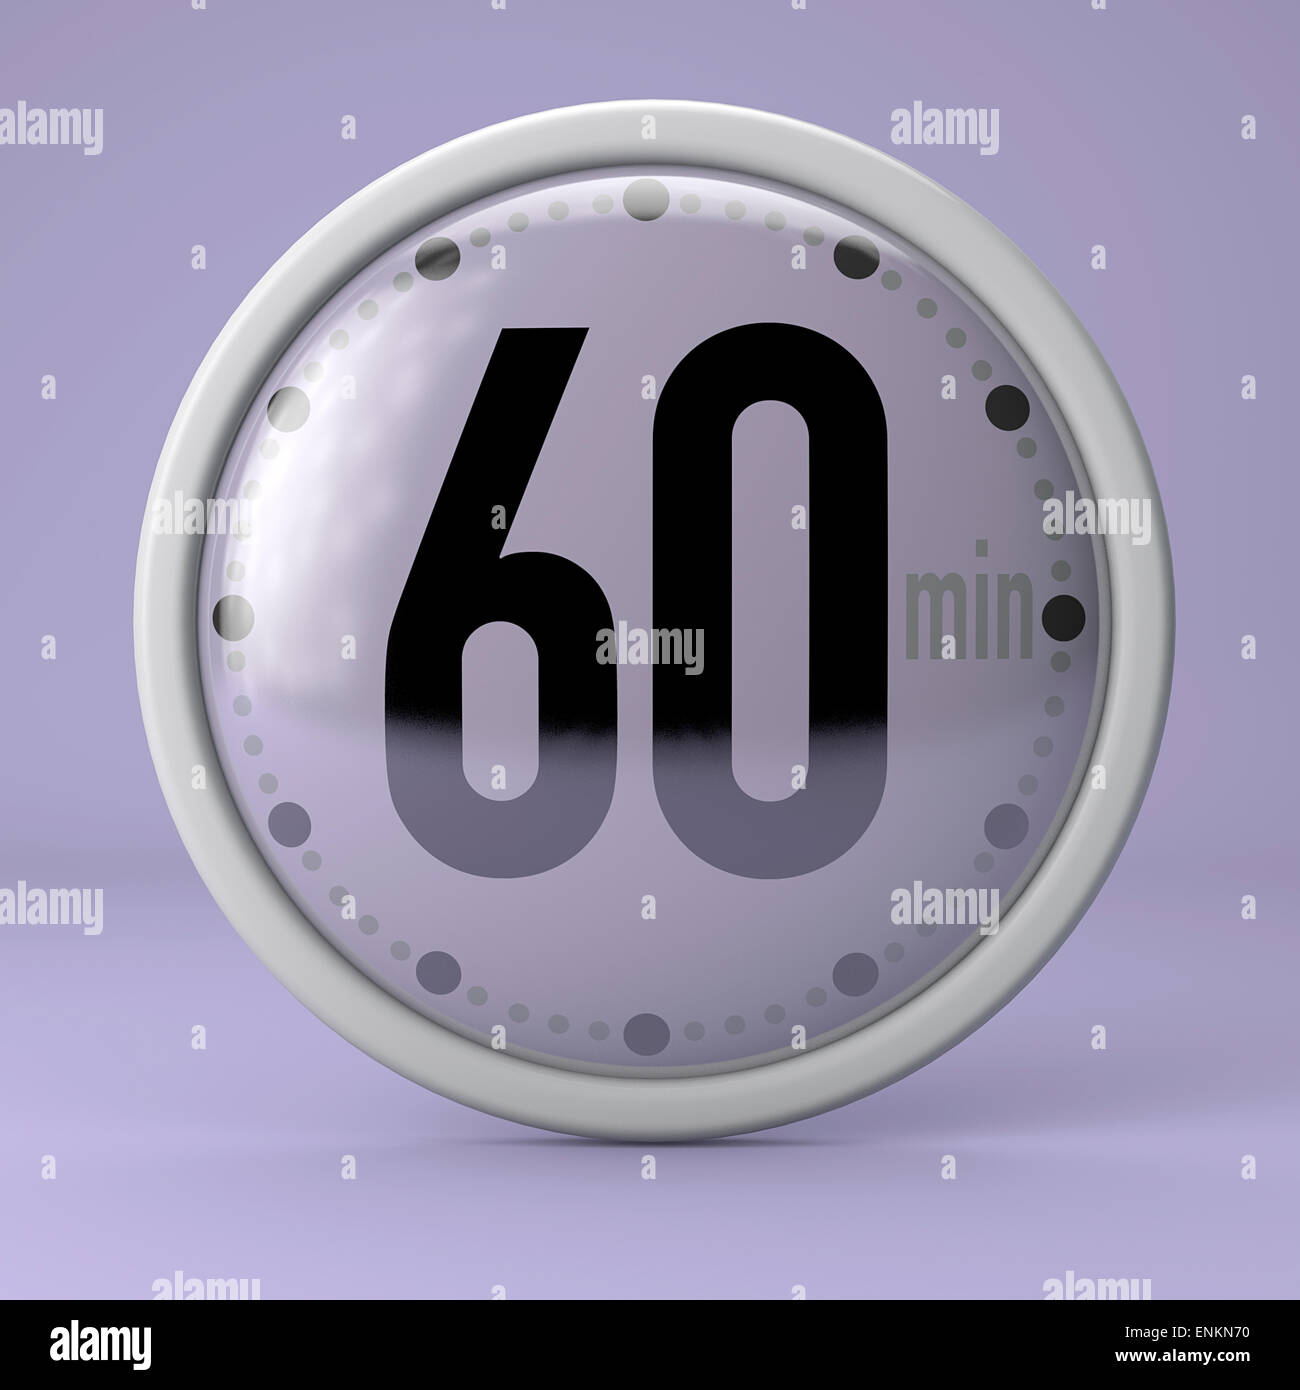 60 secondes chrono réveil sur fond violet Banque D'Images